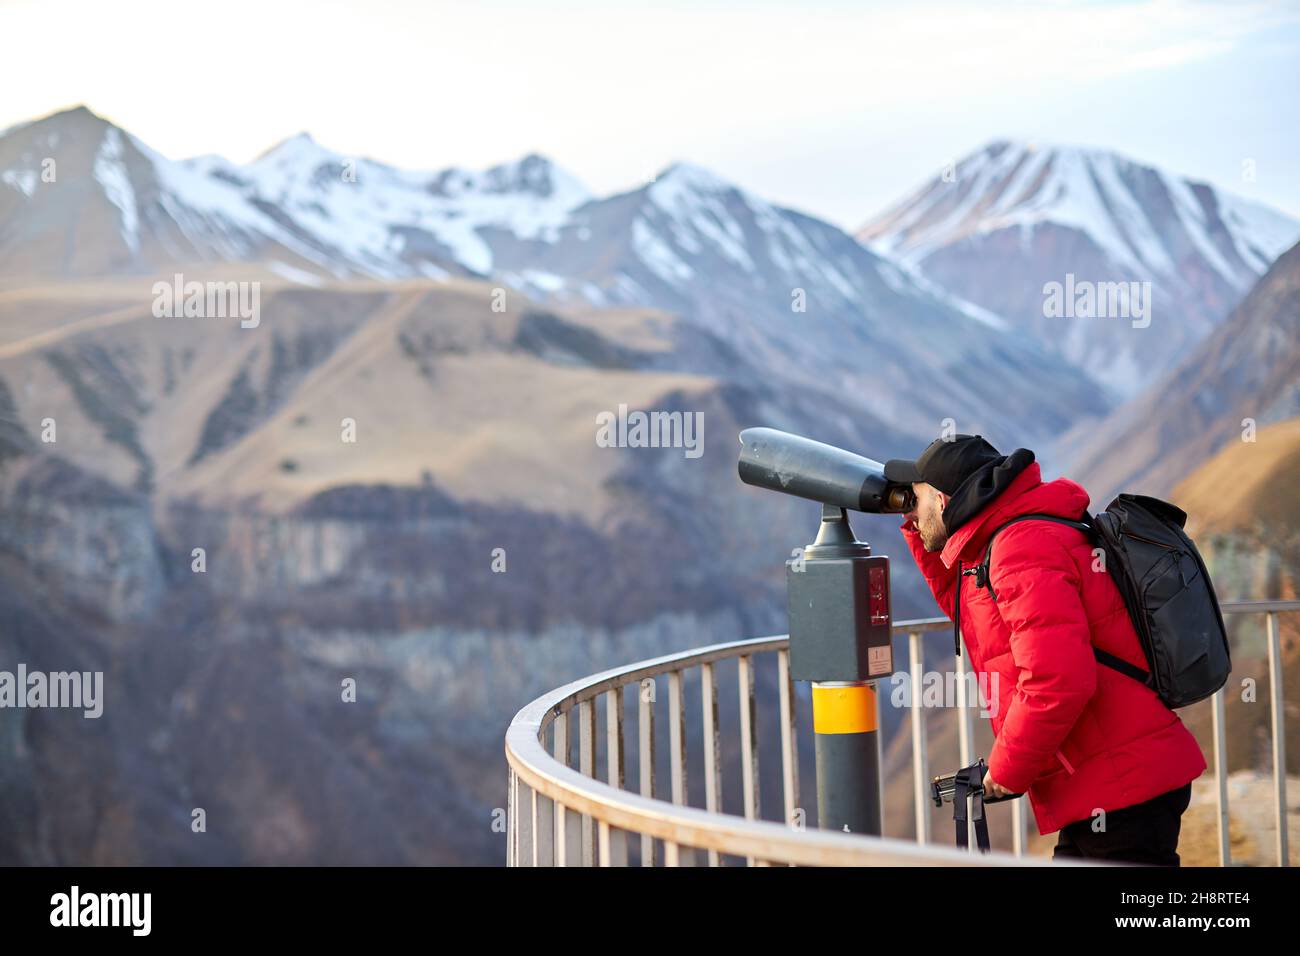 uomo con zaino nero che guarda sul ponte di osservazione, turista in background vista panoramica delle montagne Foto Stock